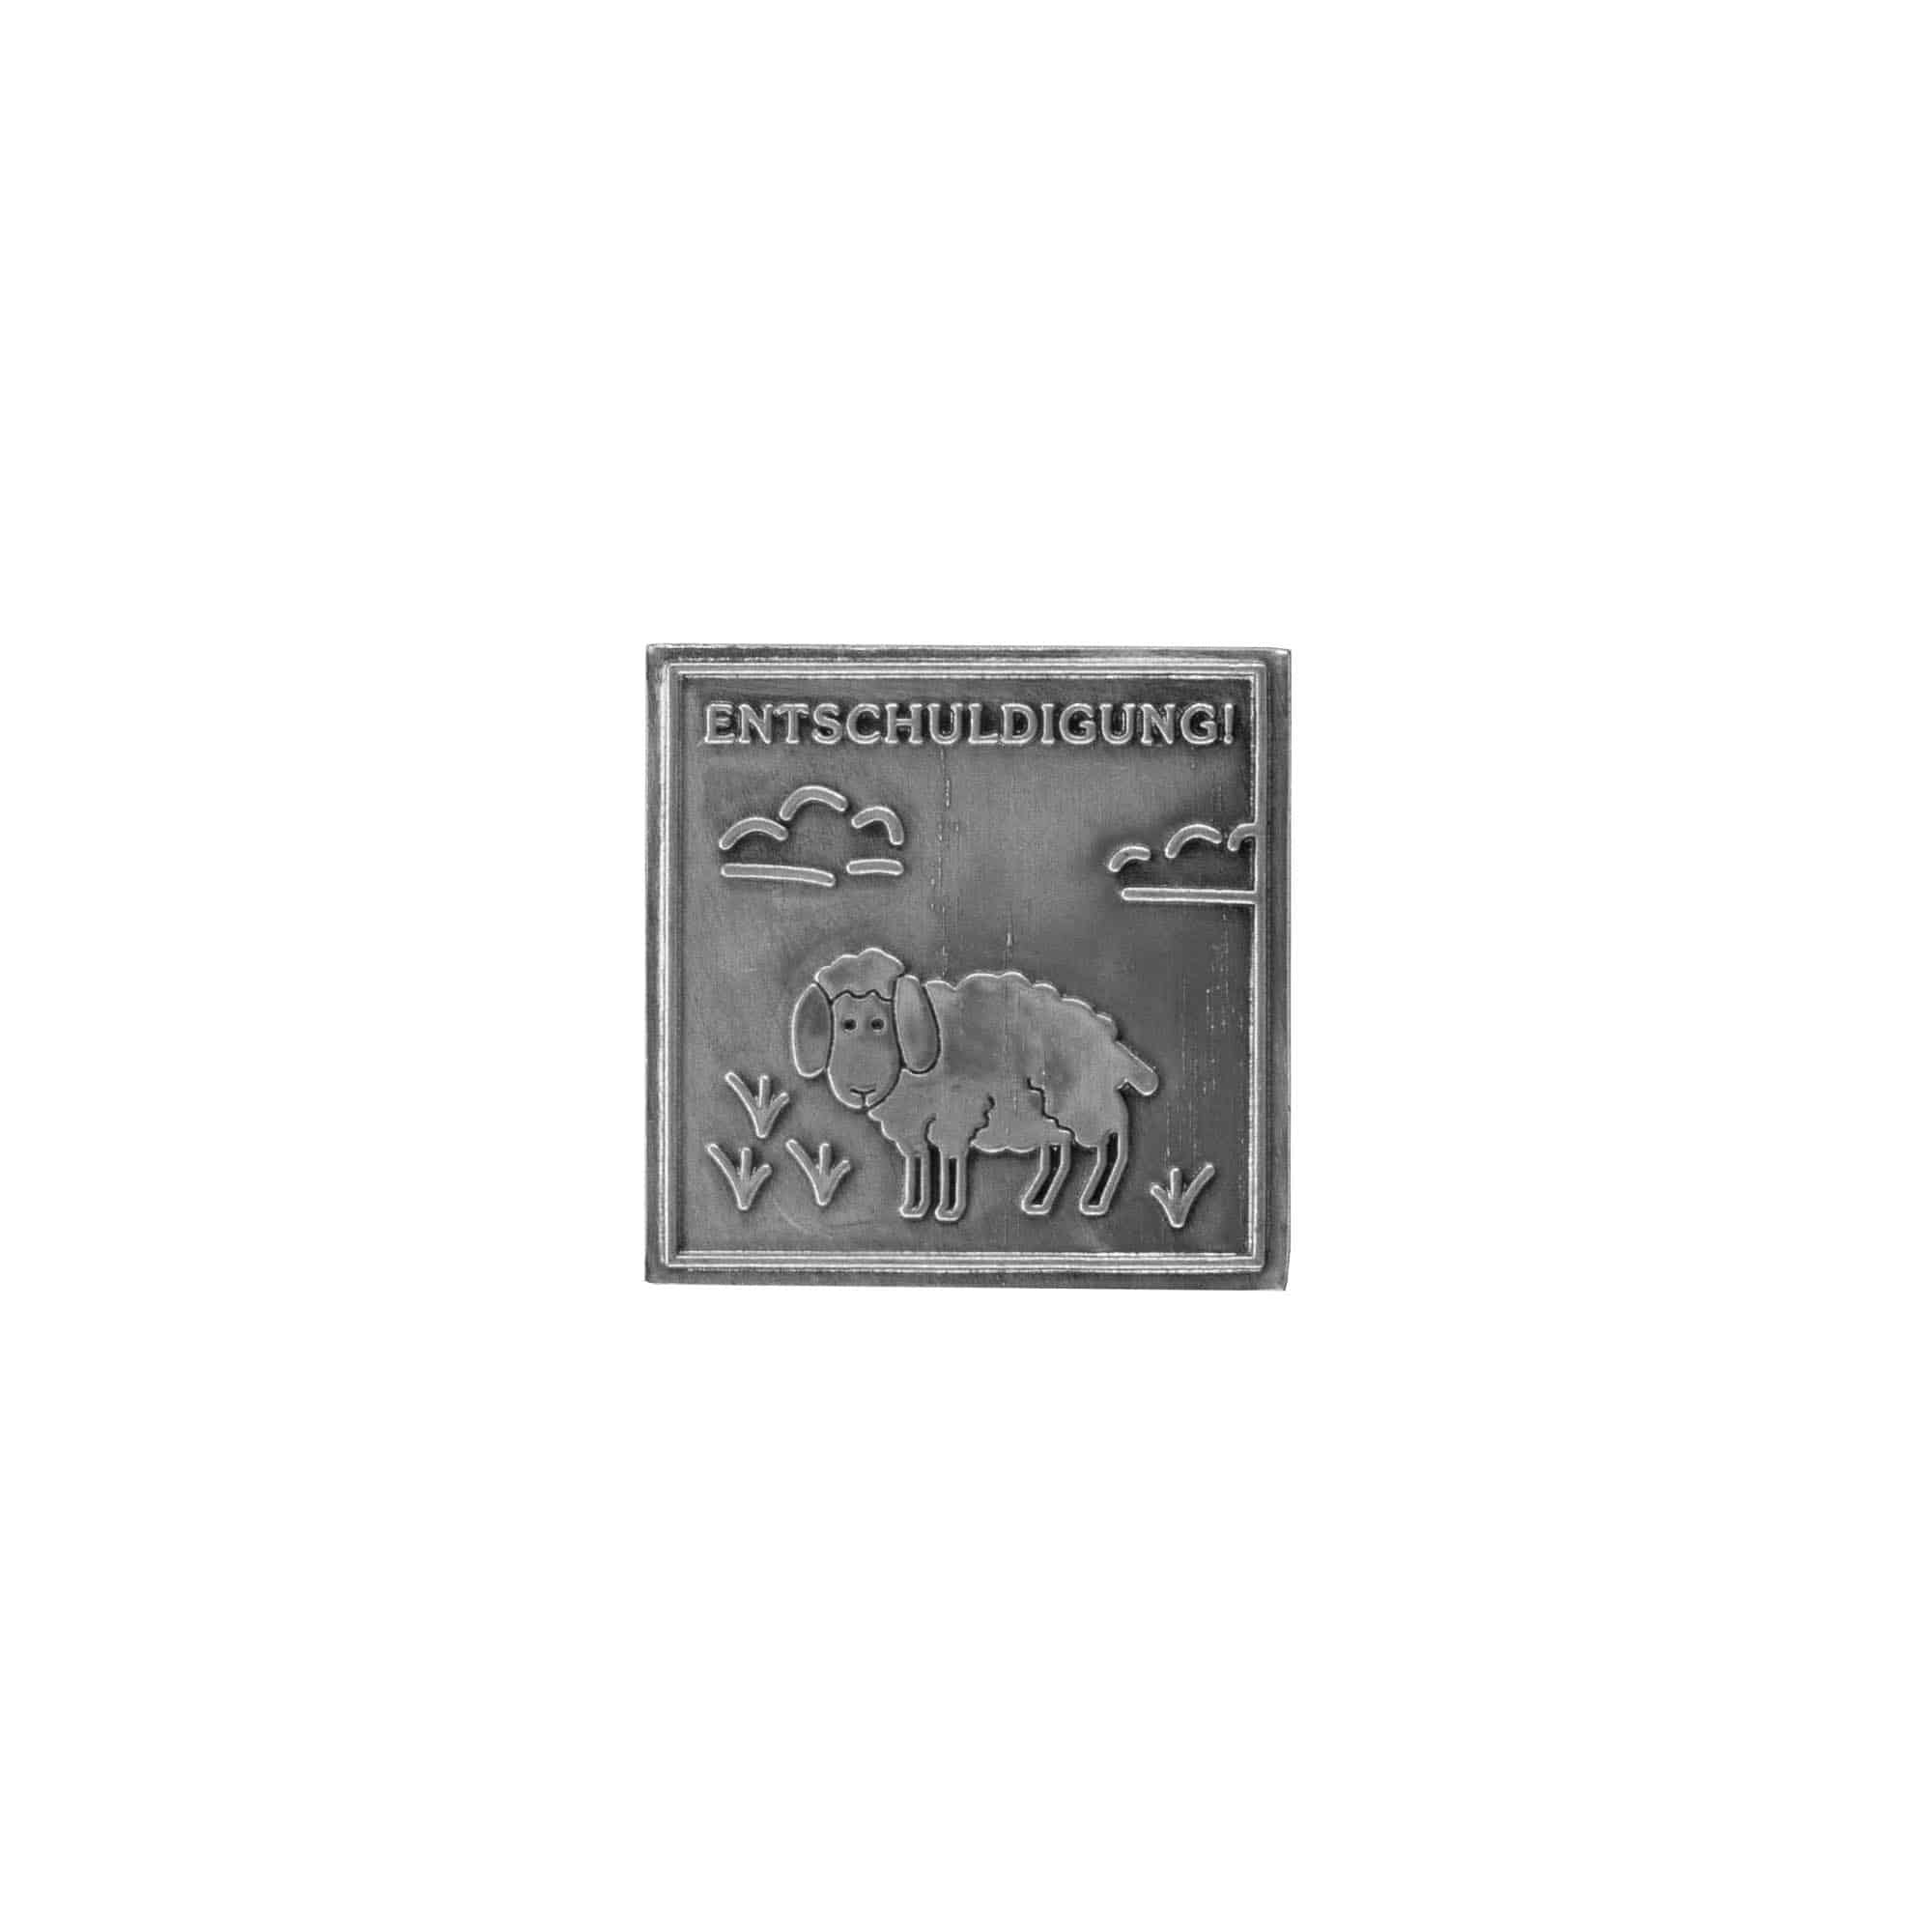 Etykieta cynowa 'Przeprosiny', kwadratowa, metal, kolor srebrny